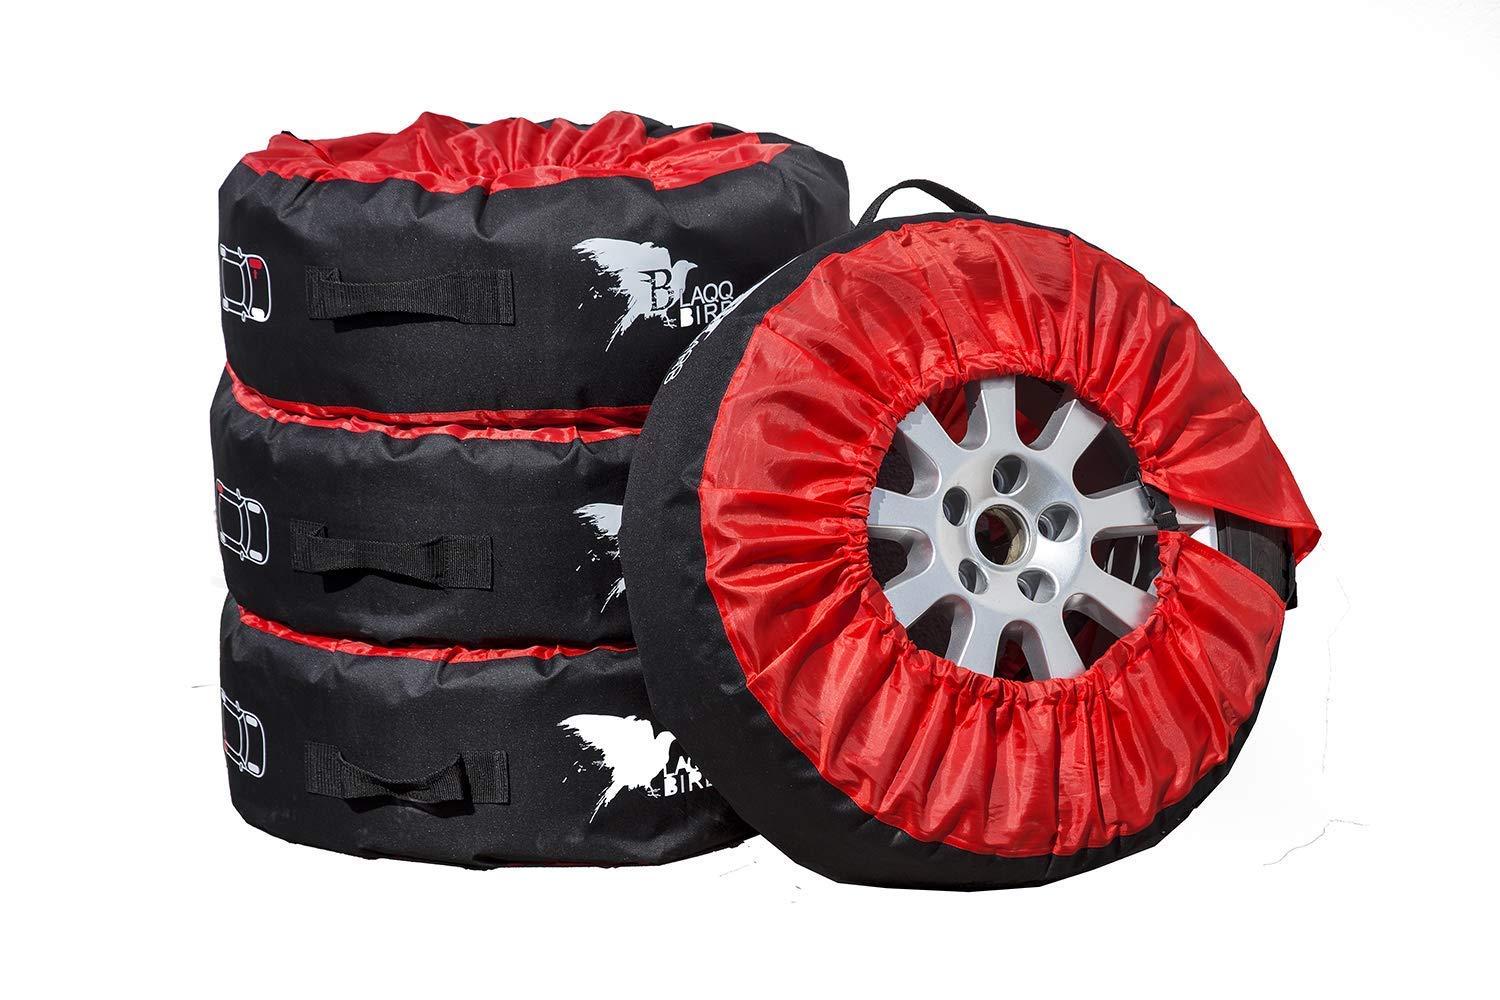 Blaqqbird Reifentaschen Set als praktische Autoreifen Schutzhülle - 4 Reifenschutzhüllen für Sommer- und Winterreifen - Reifenaufbewahrung mit Aussparung für Reifenbaum | 13"-16" | Reifen Abdeckung von Blaqqbird